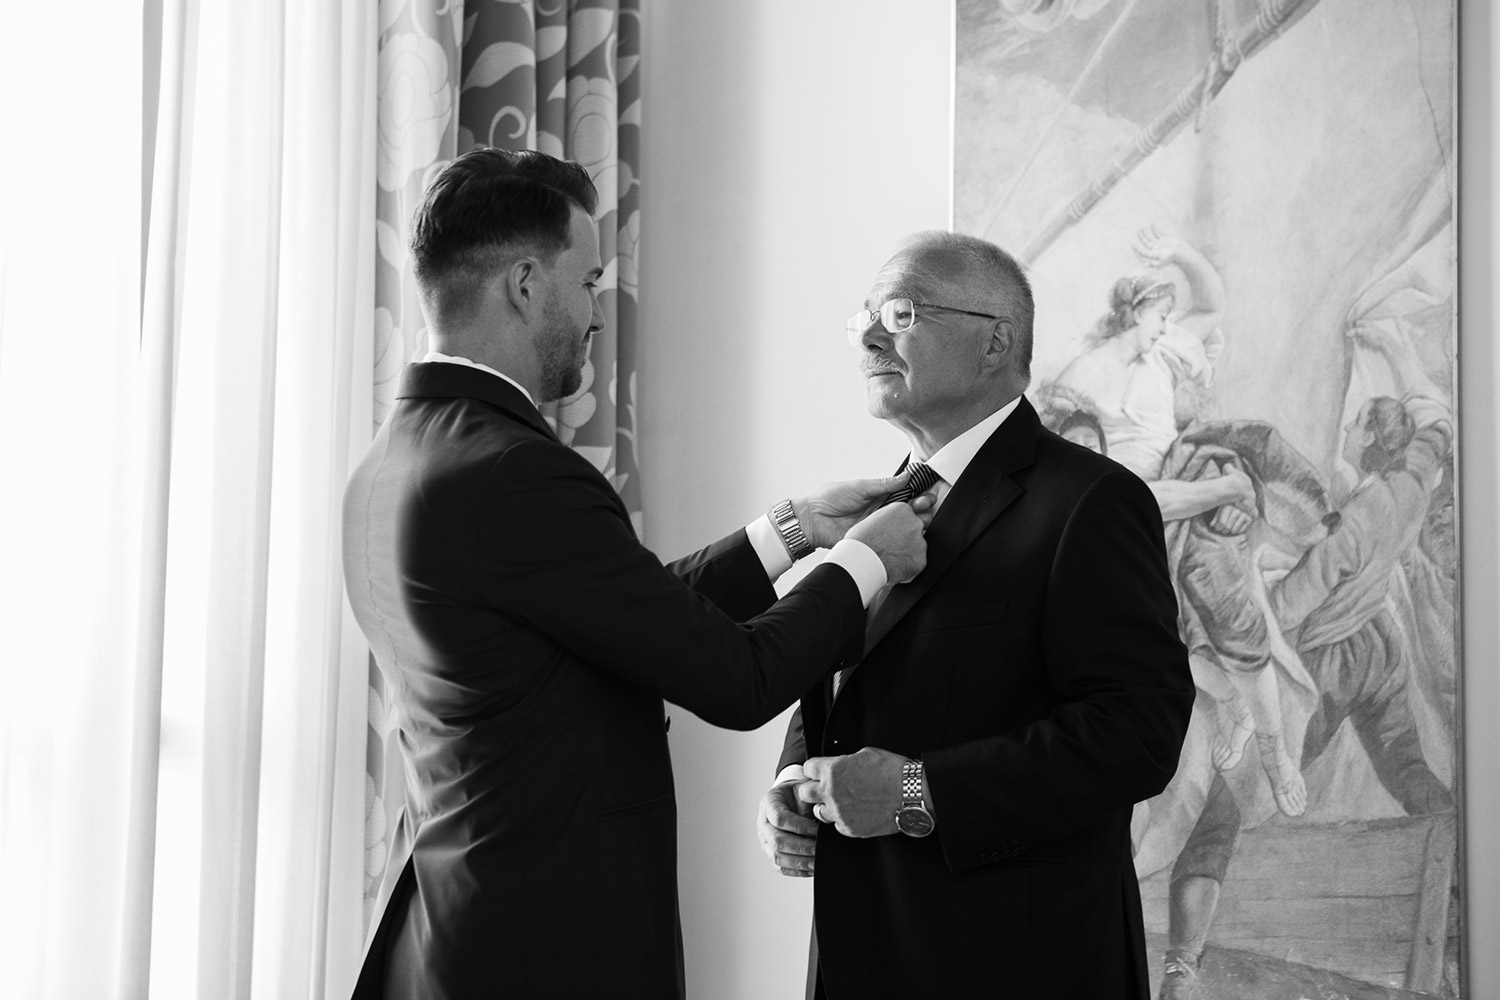 Giorgia Francesco, the groom helps his father